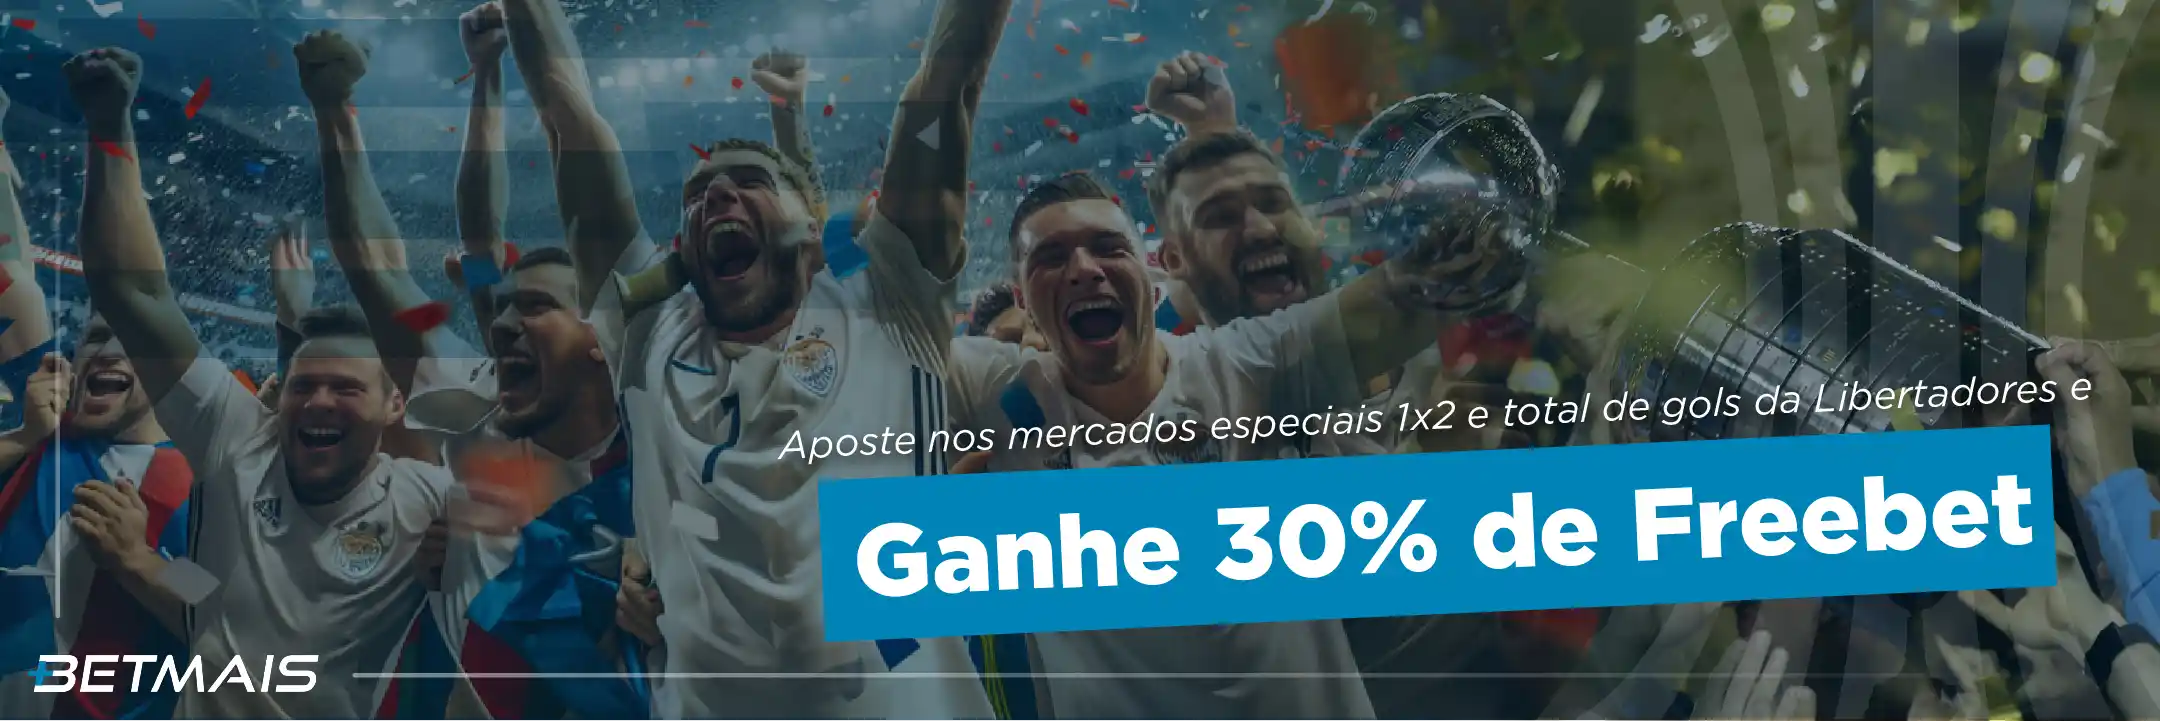 No Mercado 1x2 e Total da Libertadores e Ganhe 30% de Freebet. 